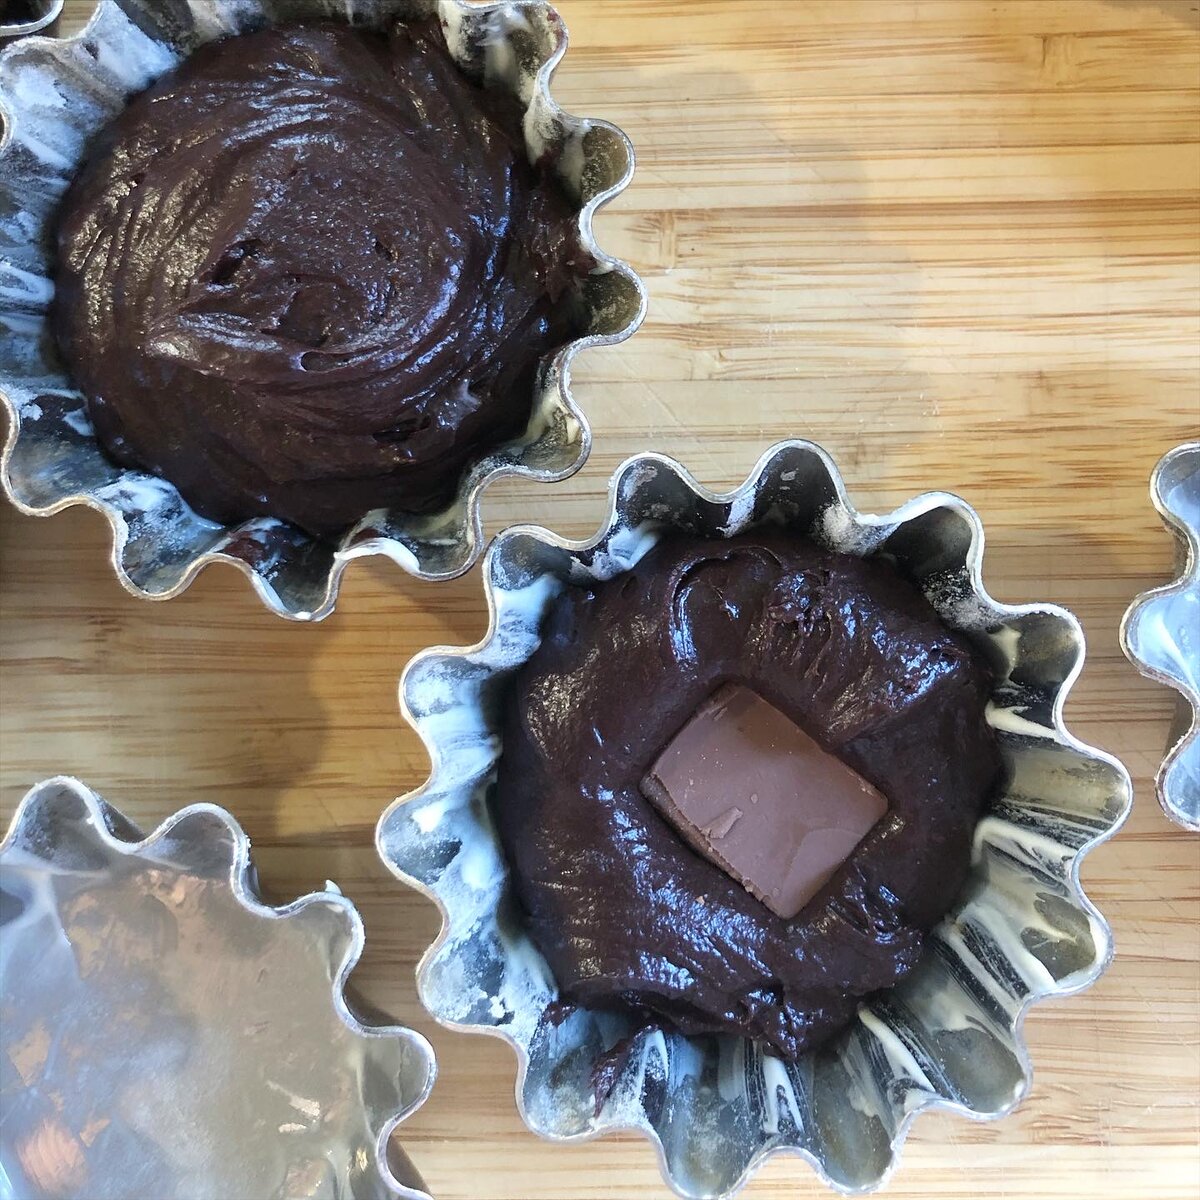 Шоколадные кексы в формочках с какао: рецепт с фото